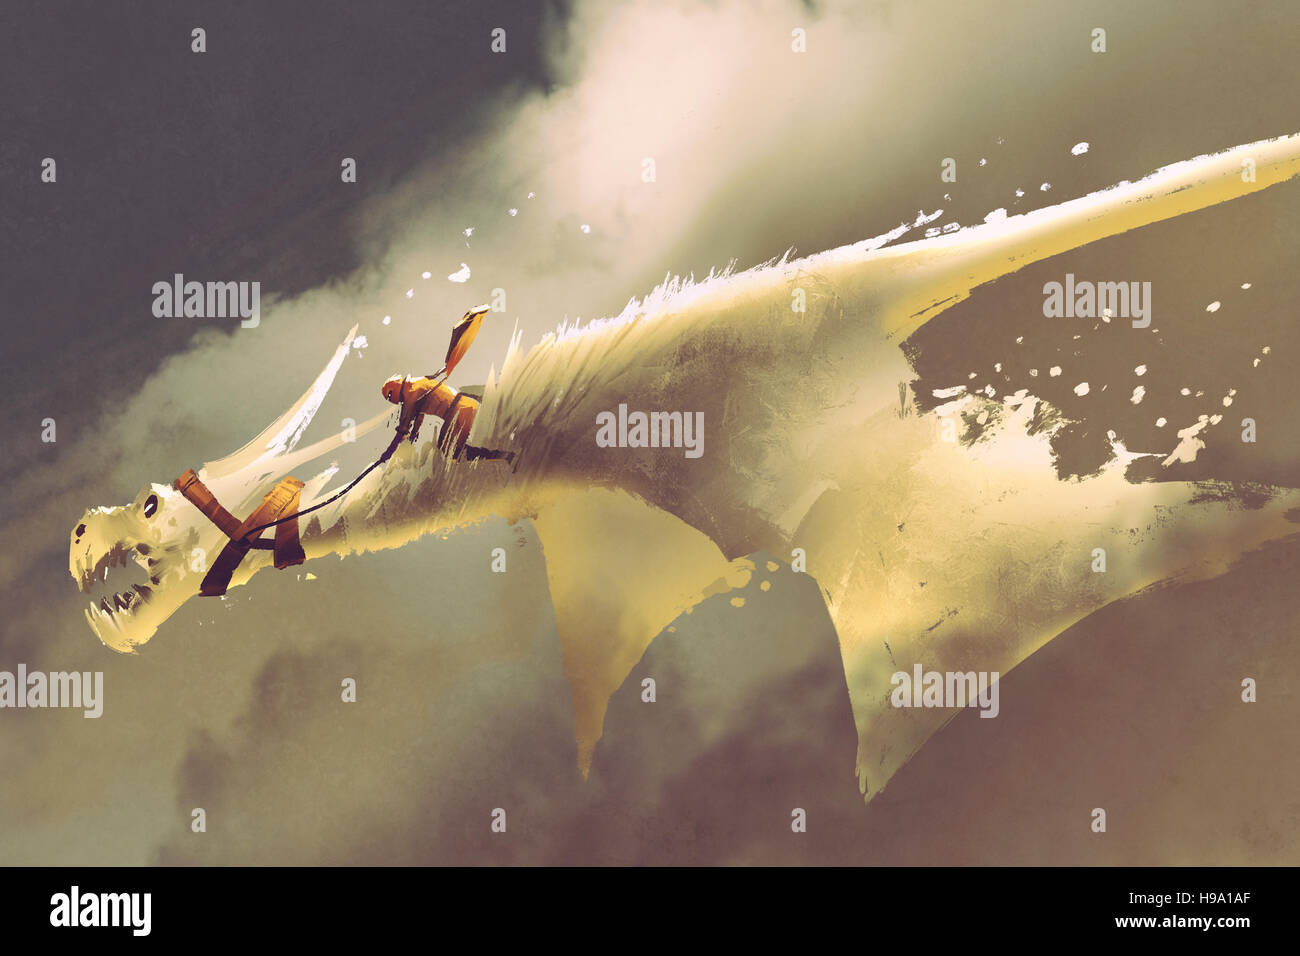 Man riding sur le dragon volant blanc contre un ciel nuageux,illustration peinture Banque D'Images